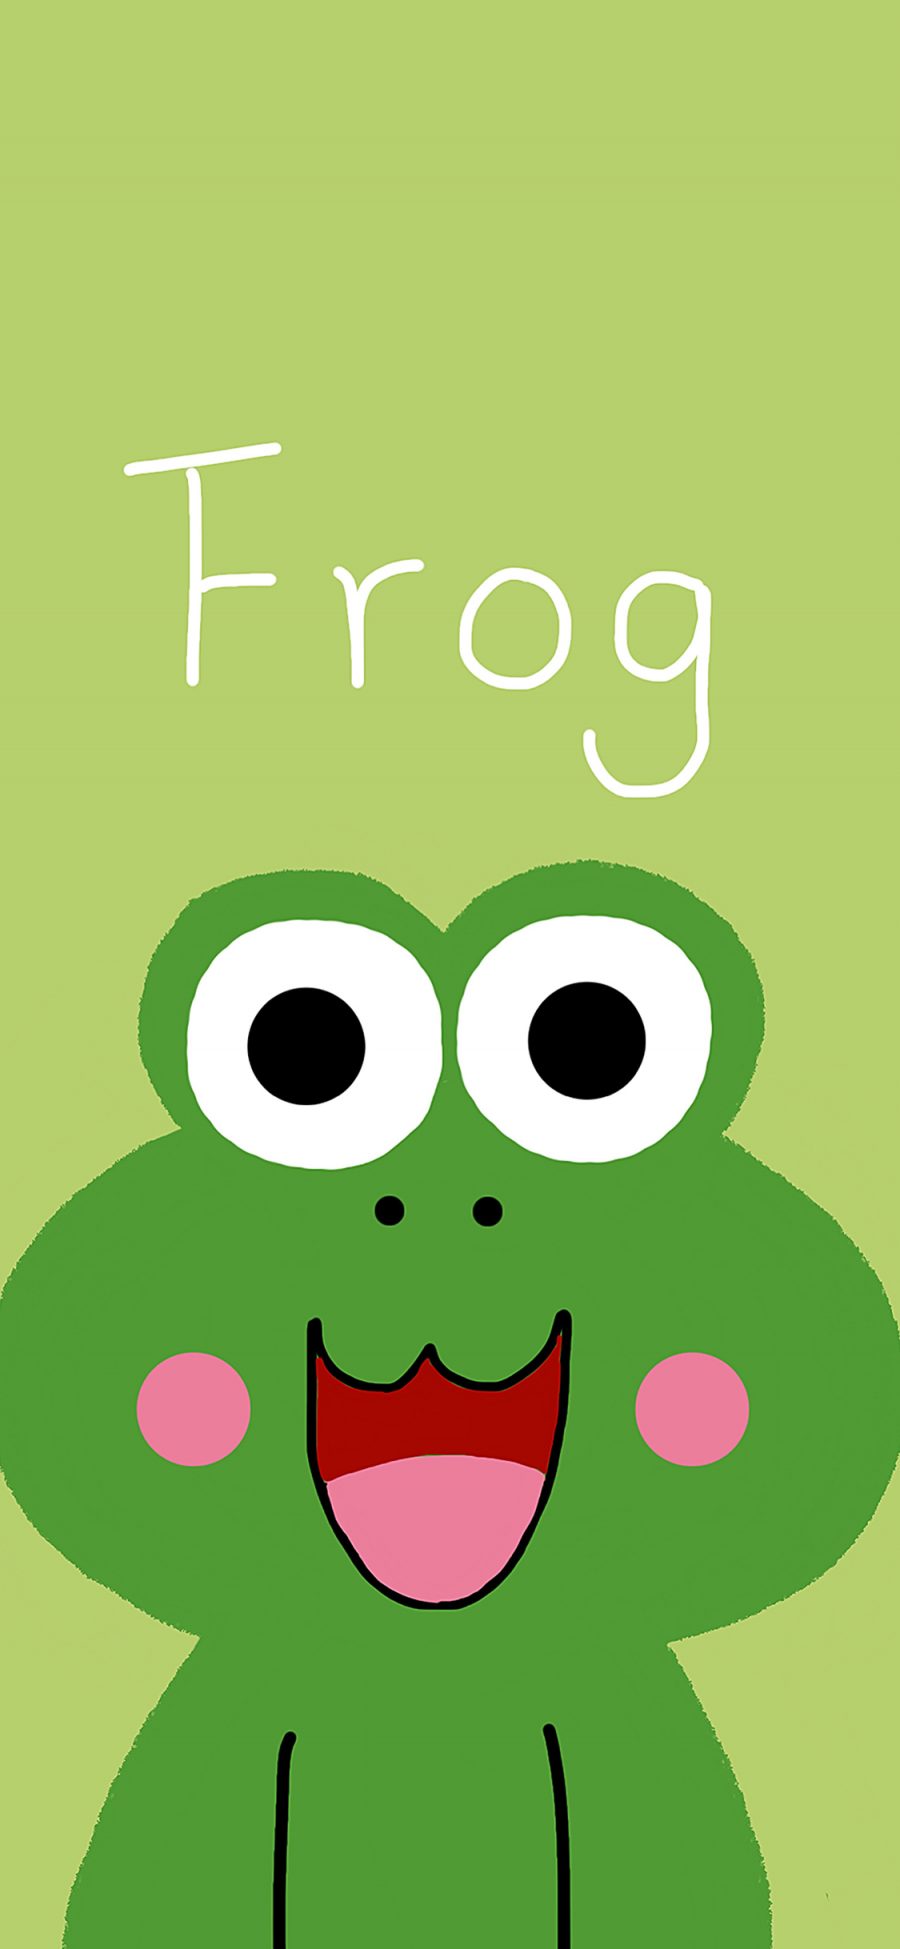 [2436×1125]绿色背景 卡通 青蛙 frog 苹果手机动漫壁纸图片